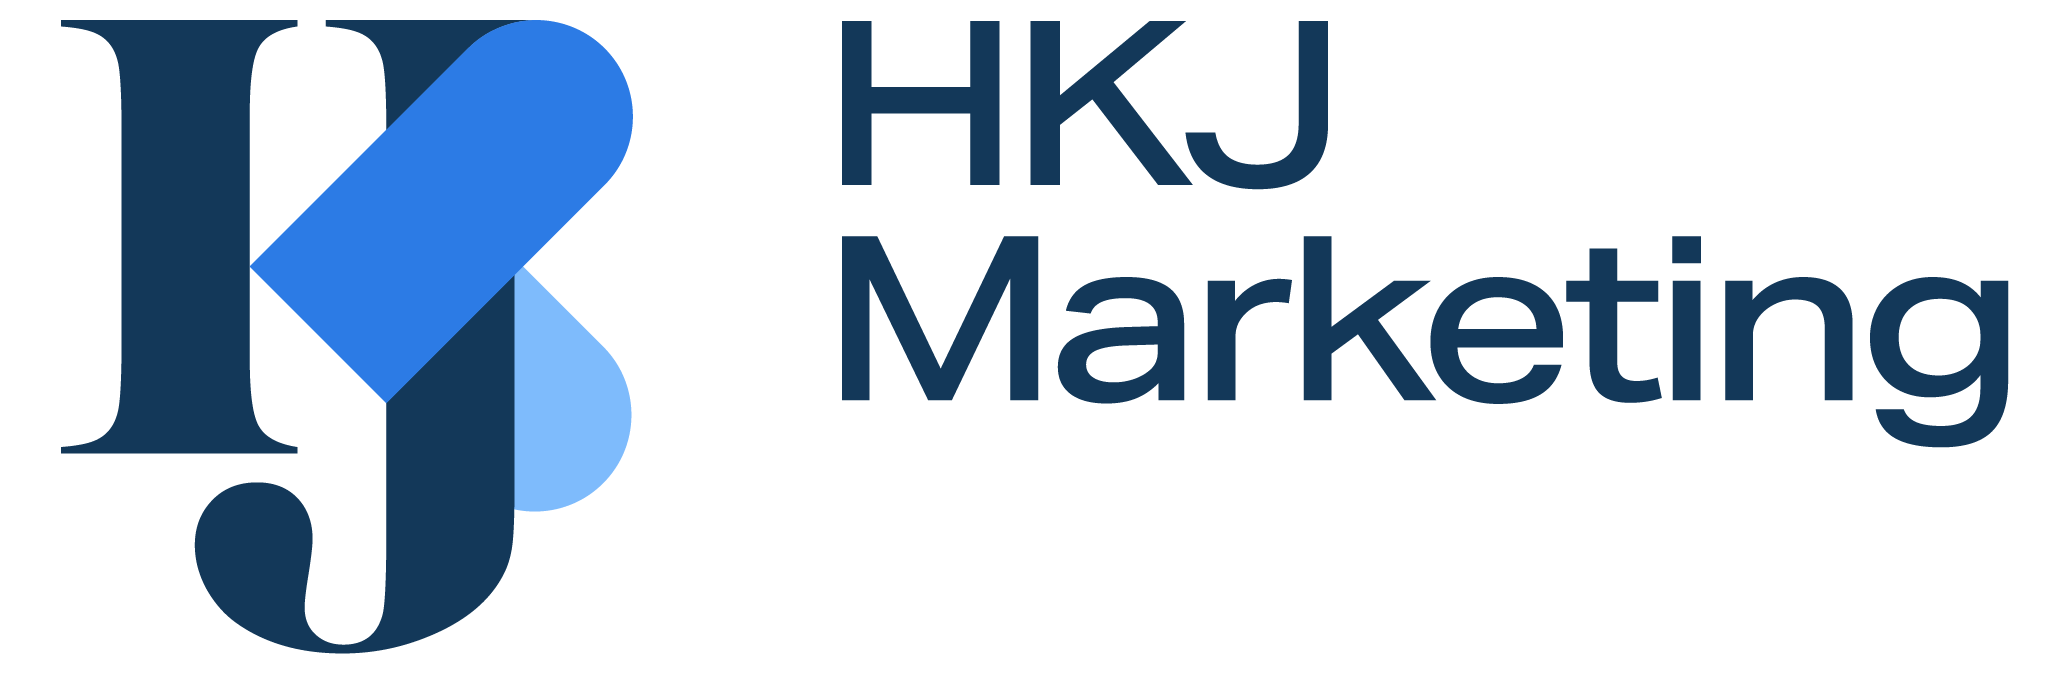 HKJ Marketing